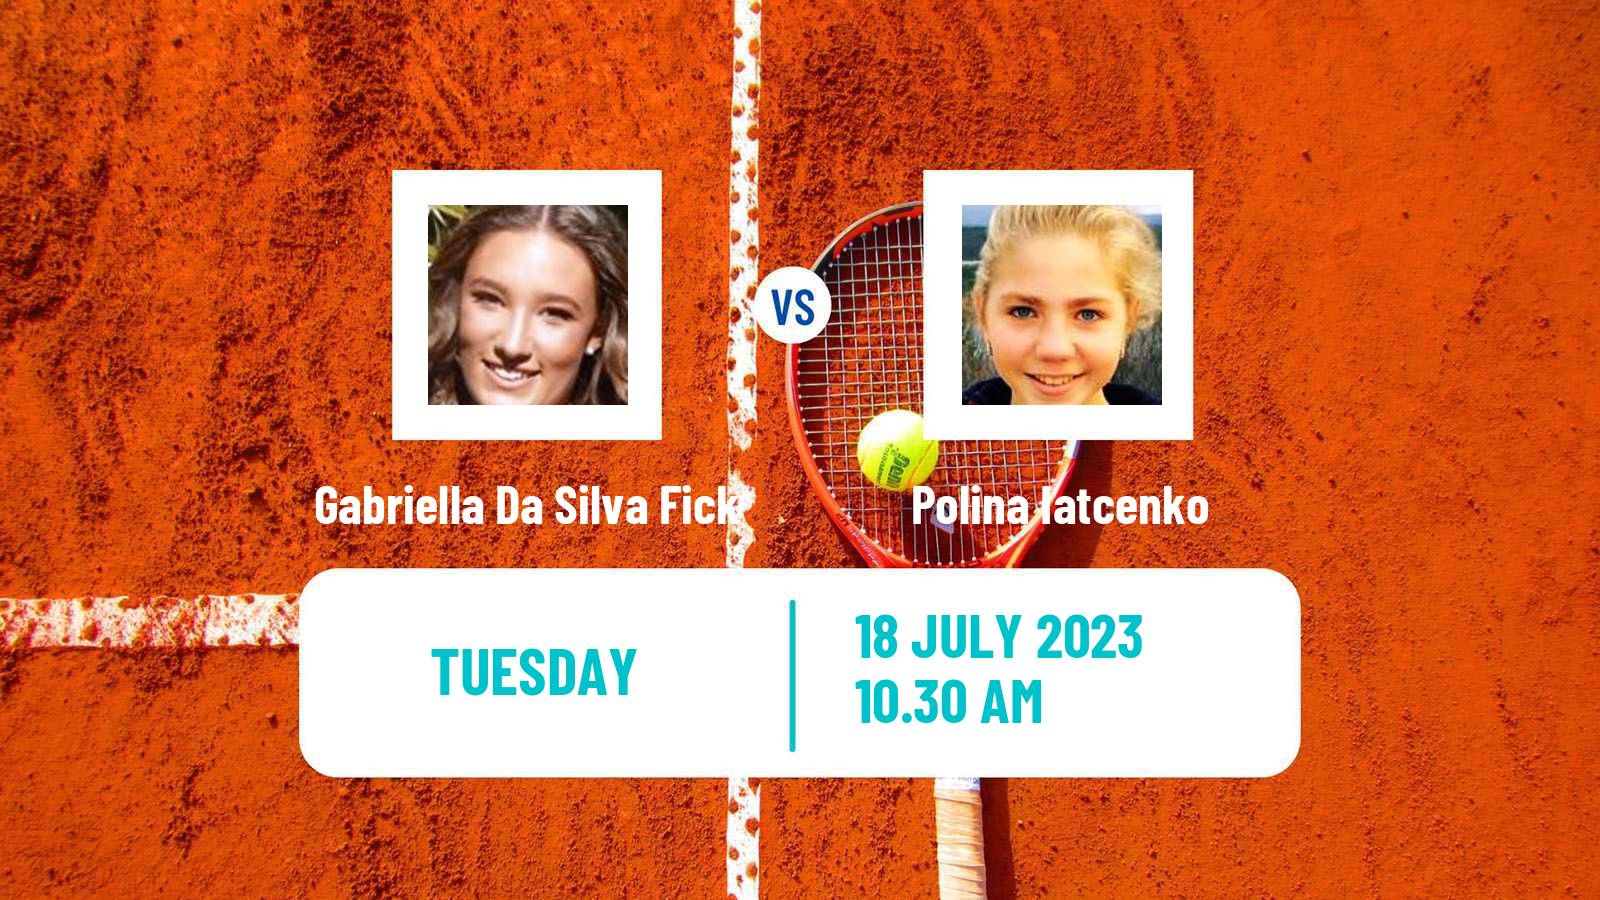 Tennis ITF W40 Porto 3 Women Gabriella Da Silva Fick - Polina Iatcenko